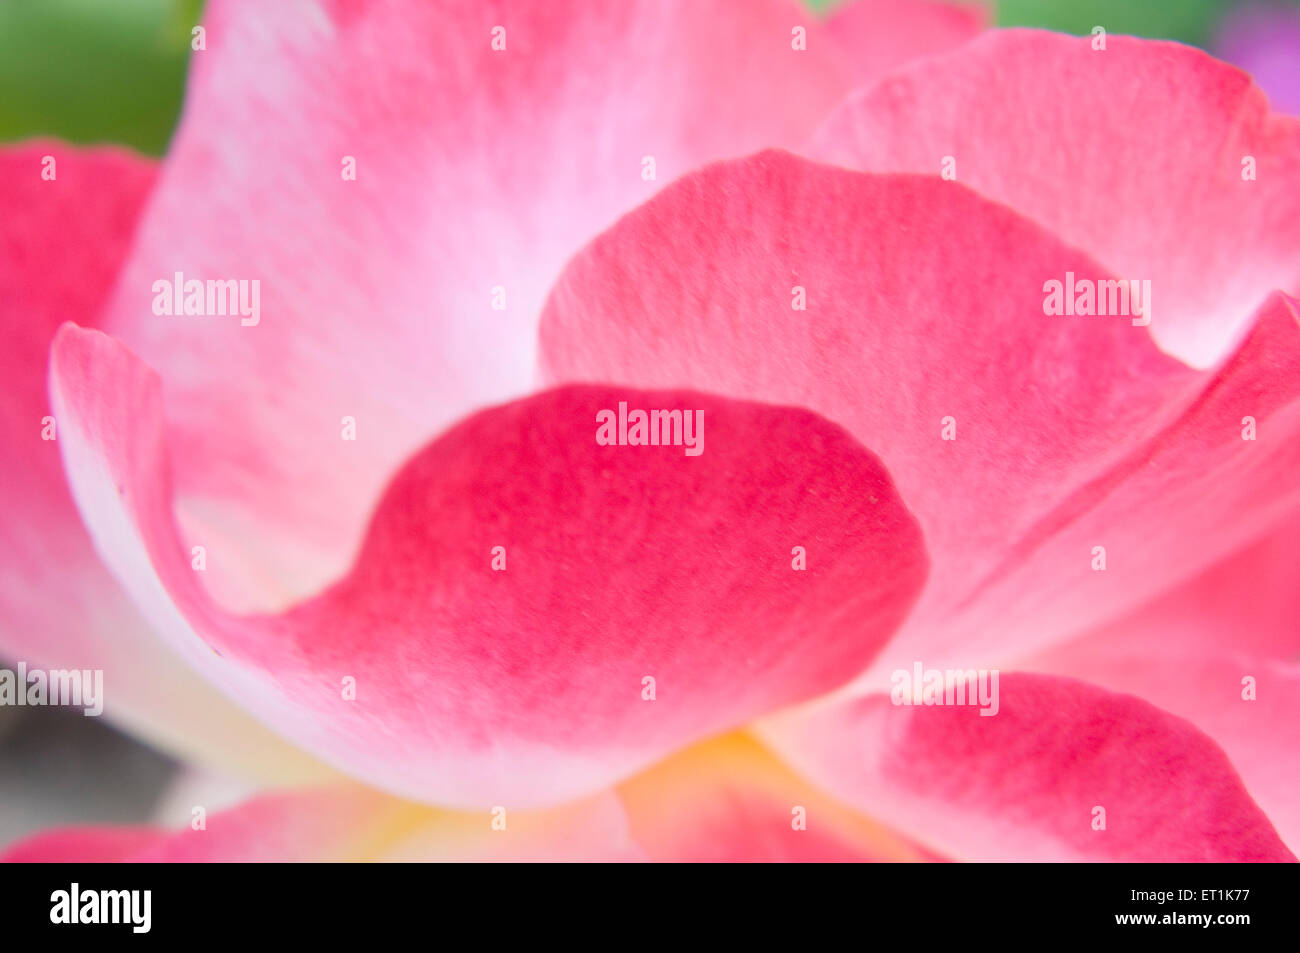 pink rose petals closeup Stock Photo